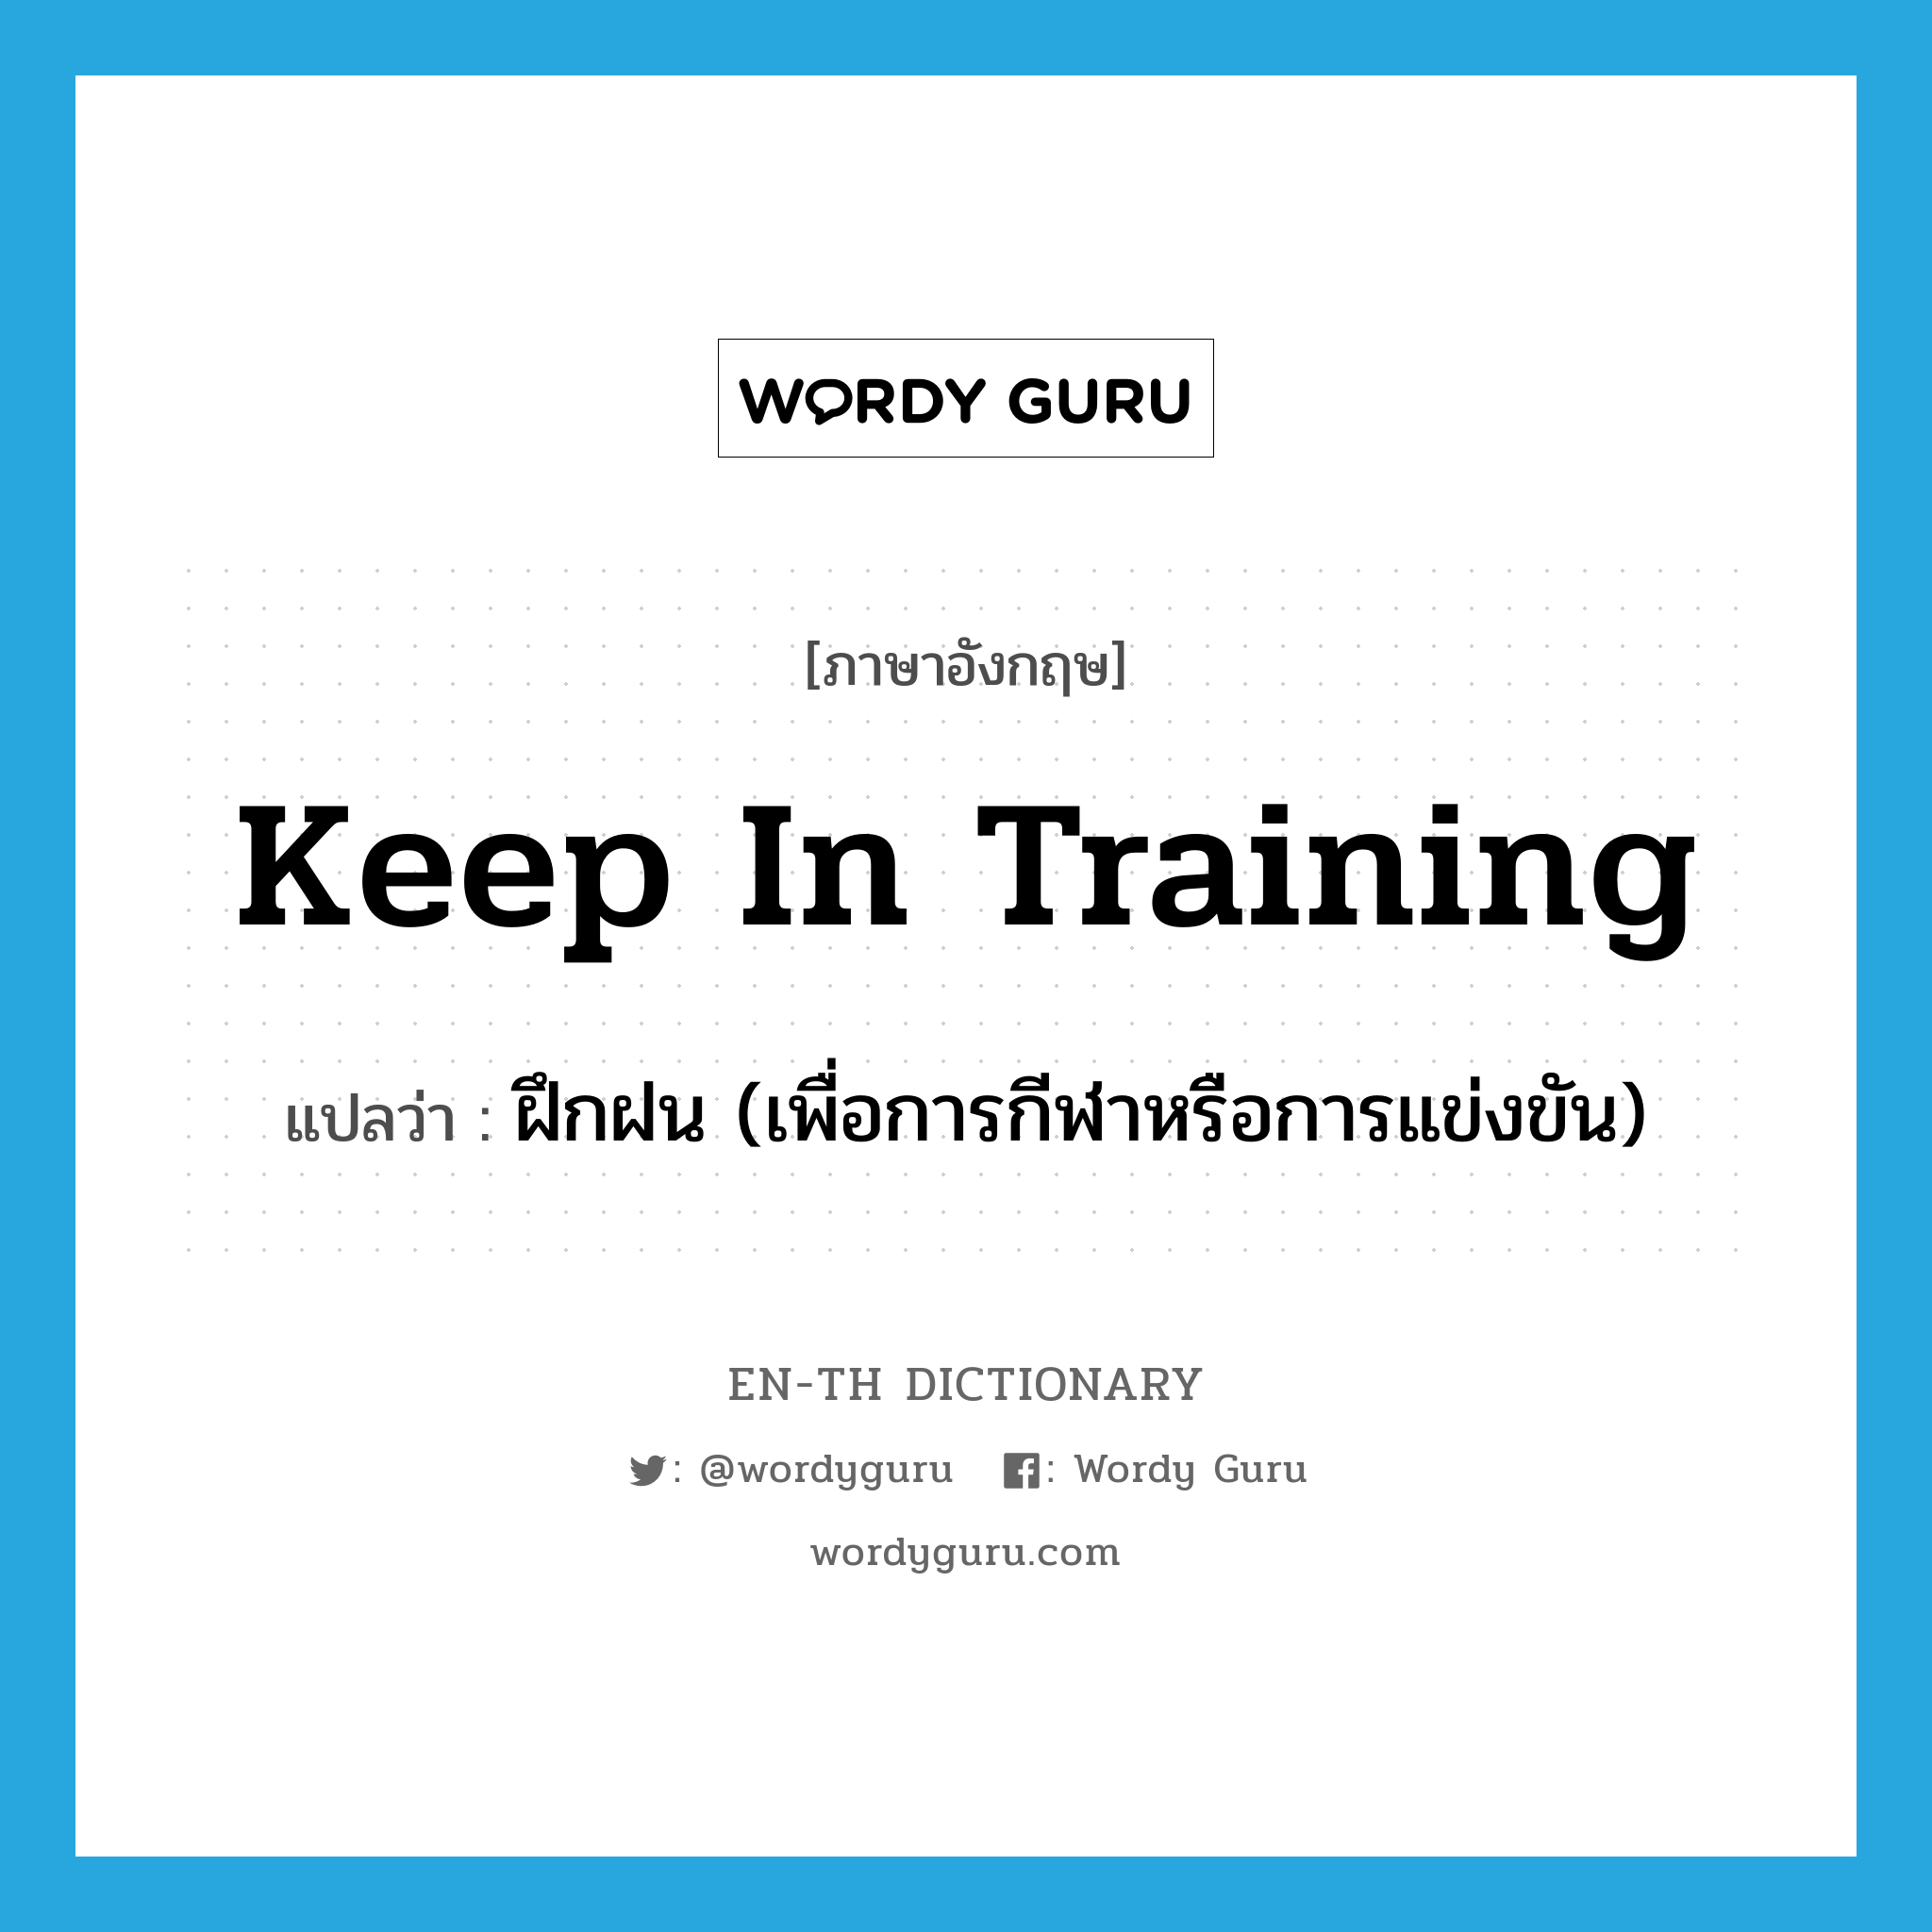 ฝึกฝน (เพื่อการกีฬาหรือการแข่งขัน) ภาษาอังกฤษ?, คำศัพท์ภาษาอังกฤษ ฝึกฝน (เพื่อการกีฬาหรือการแข่งขัน) แปลว่า keep in training ประเภท IDM หมวด IDM